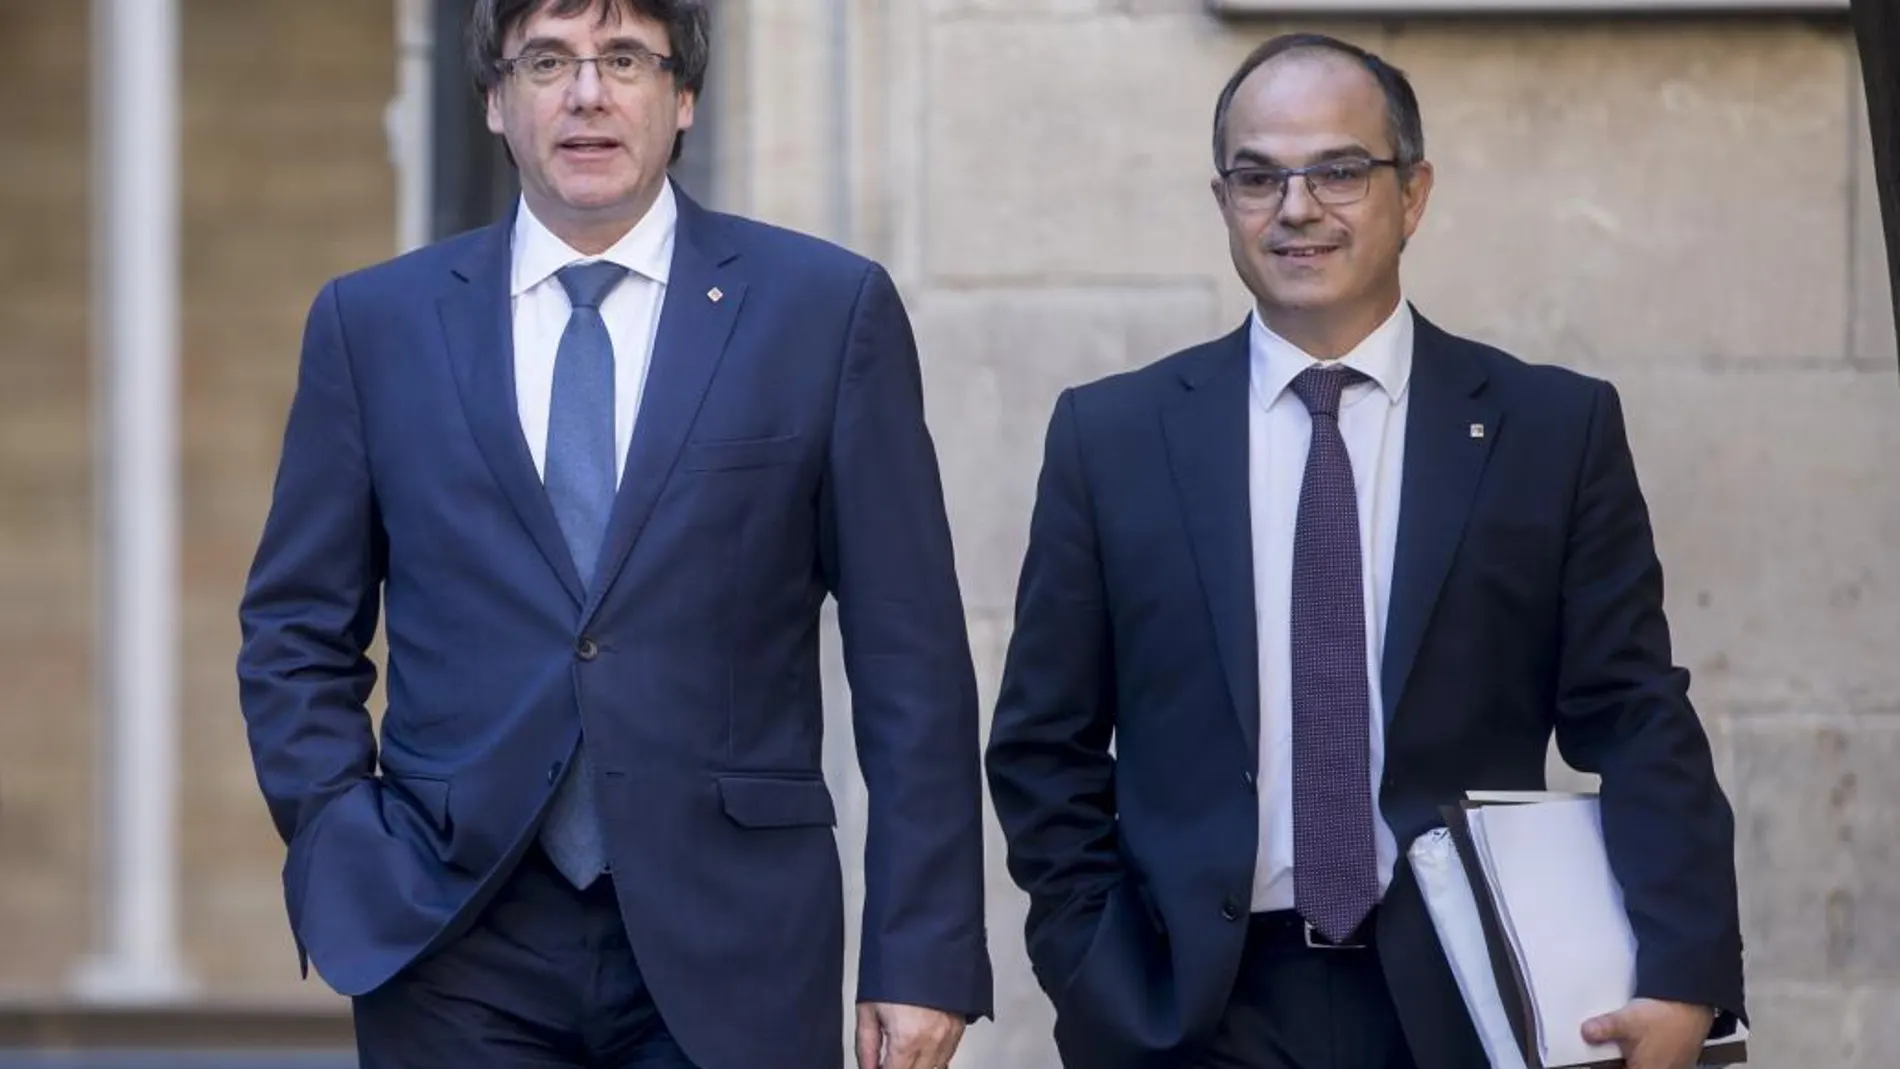 El presidente de la Generalitat , Carles Puigdemont, junto al conseller de Presidencia, Jordi Turull (d), a su llegada a la reunión semanal del gobierno catalán.